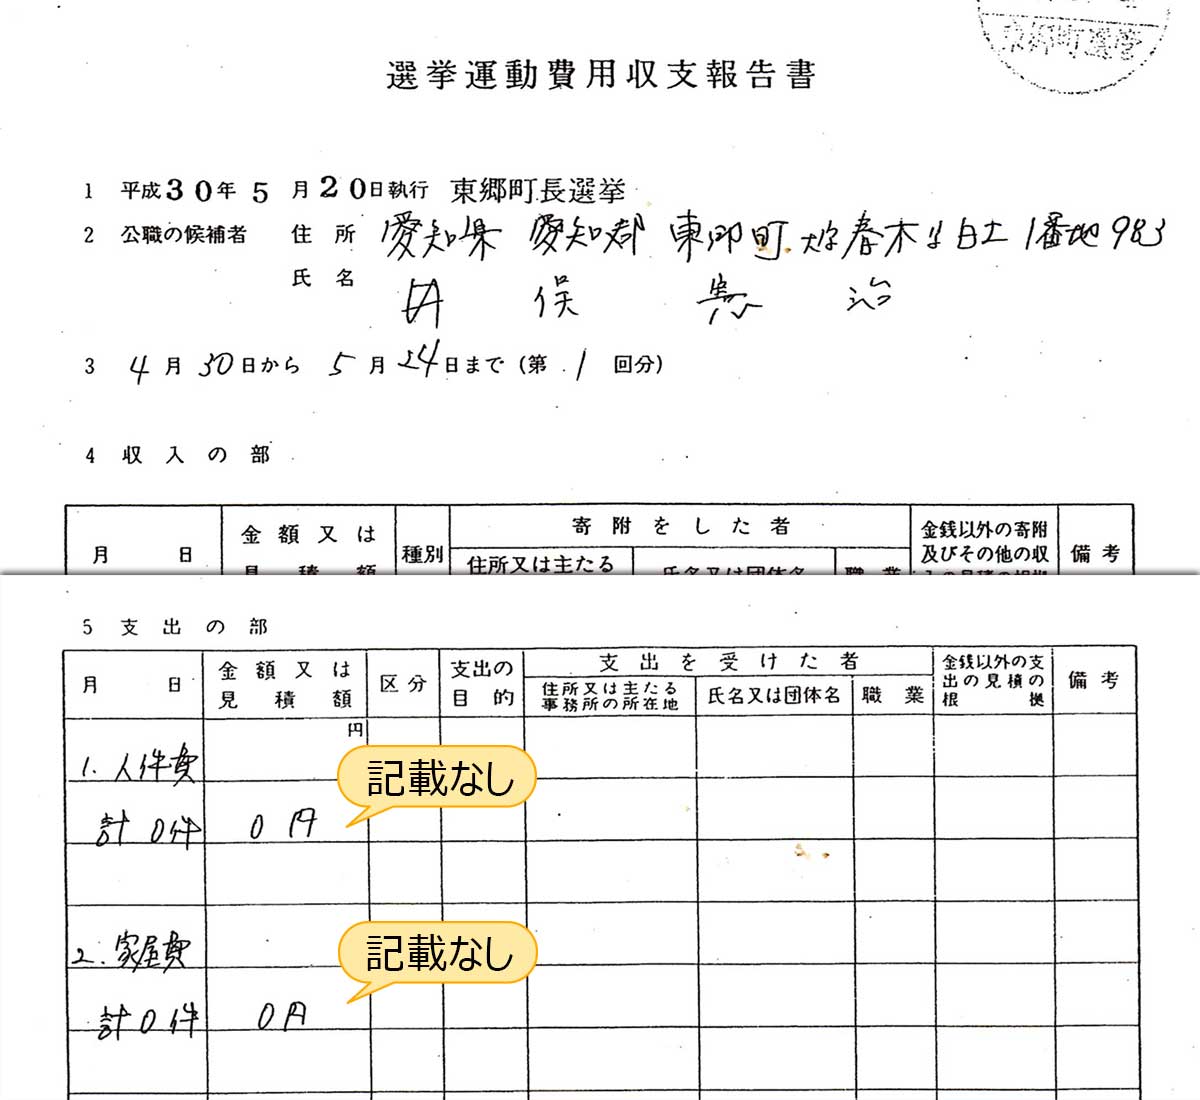 井俣憲治選挙運動費用収支報告書